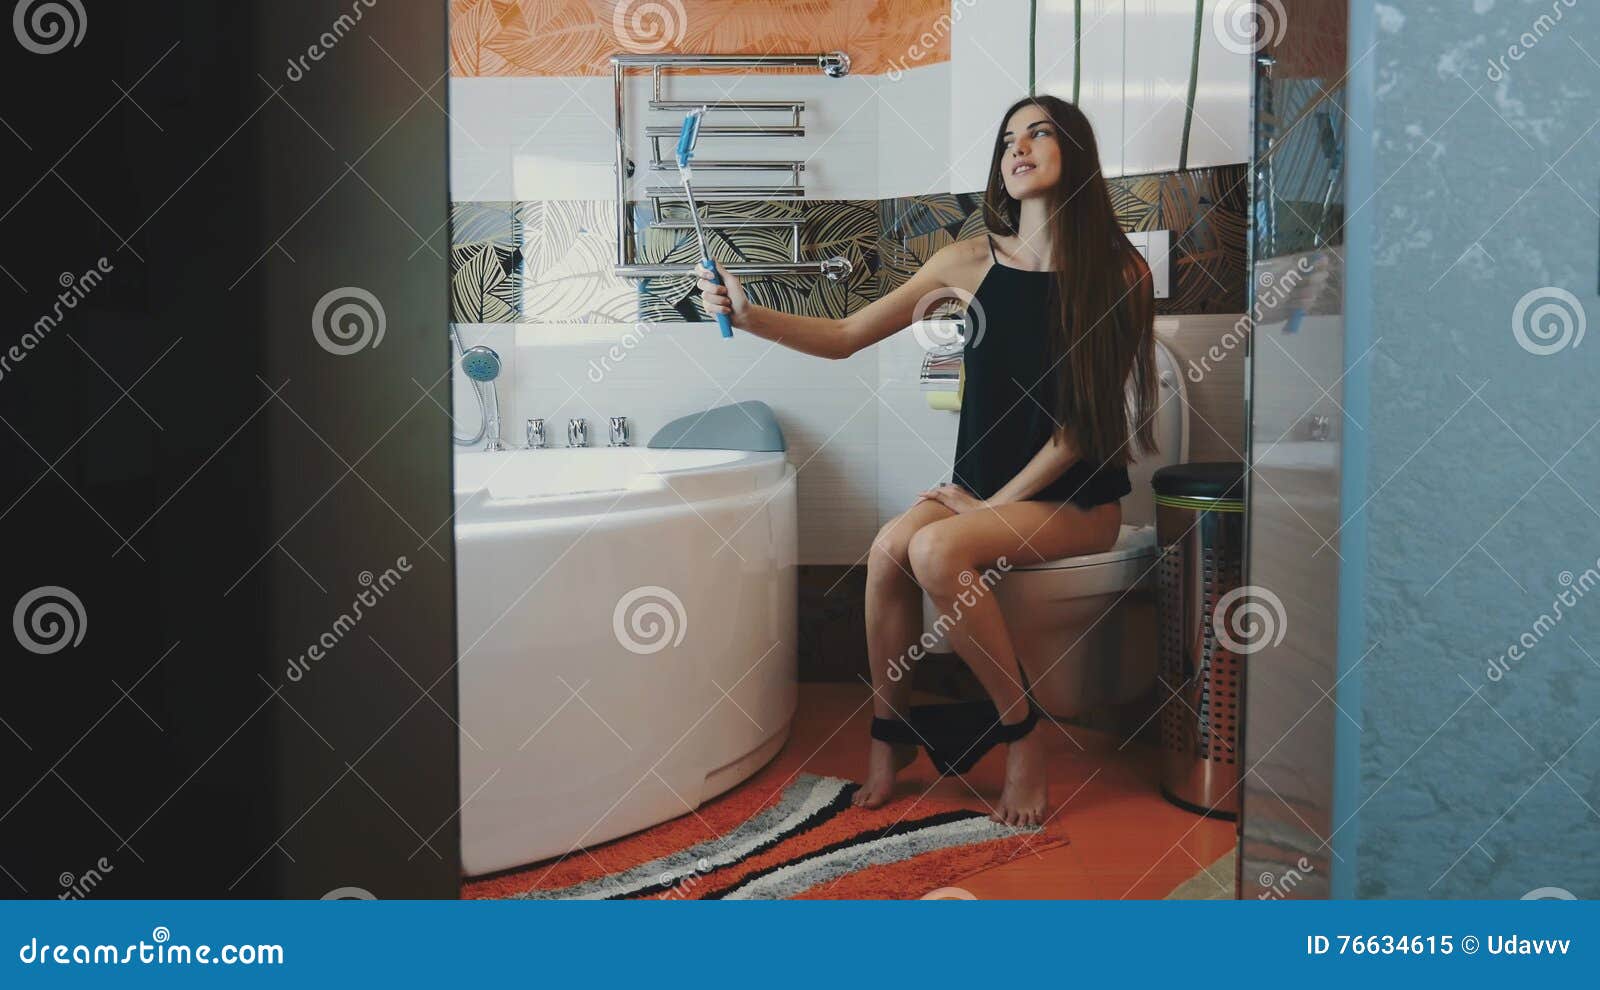 panties selfie girl toilet